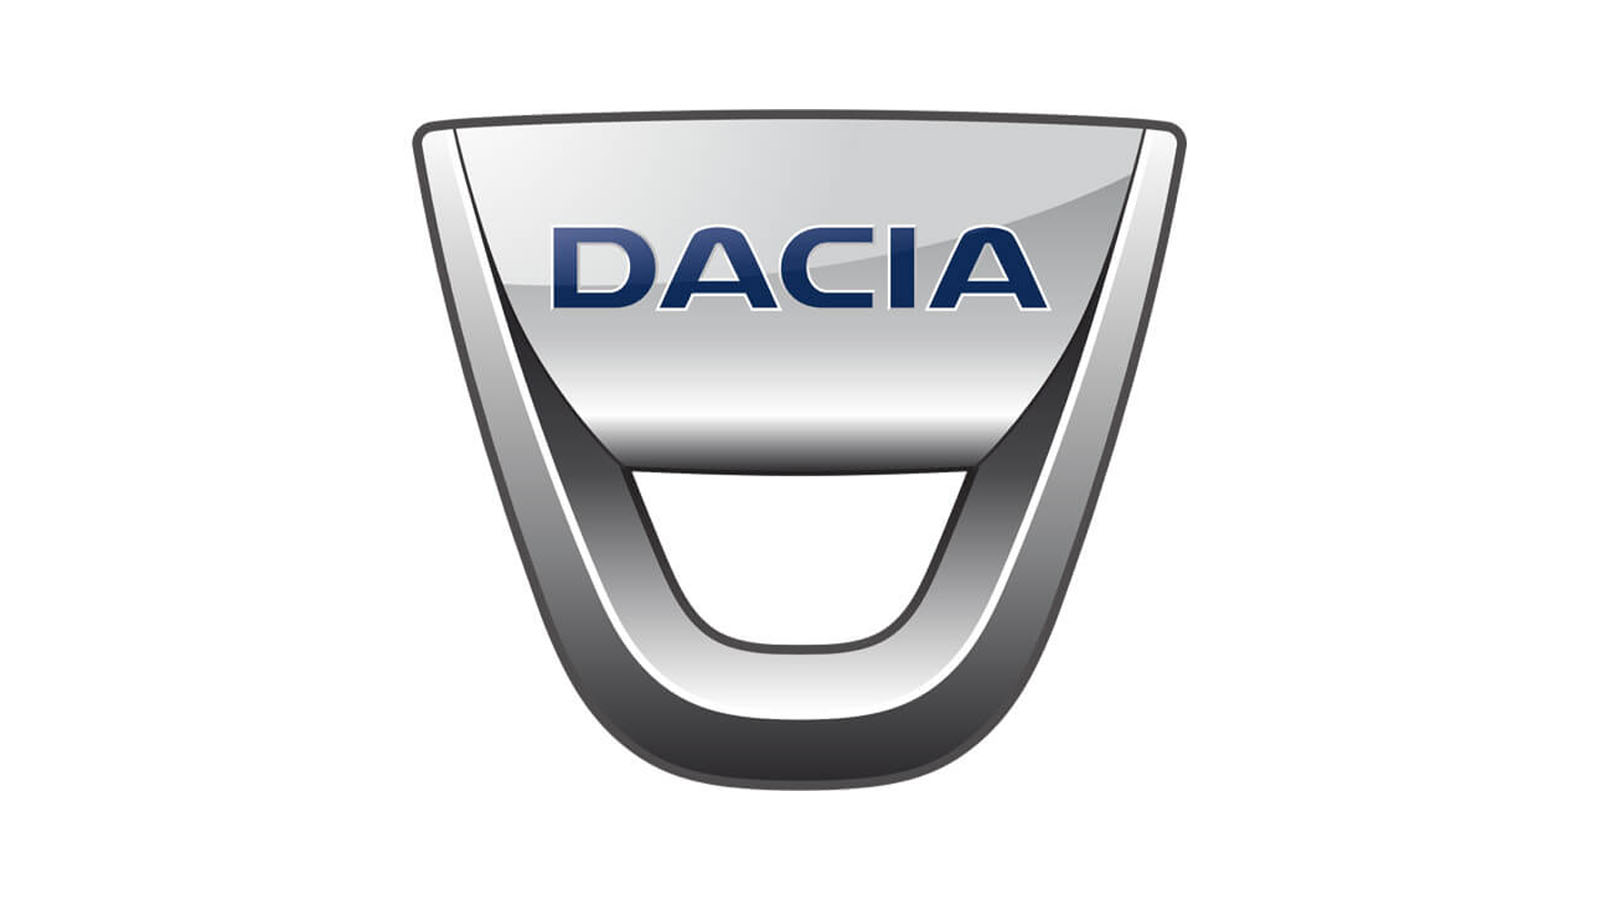 Dacia Markası Tarihi ve Tarihsel Gelişimi